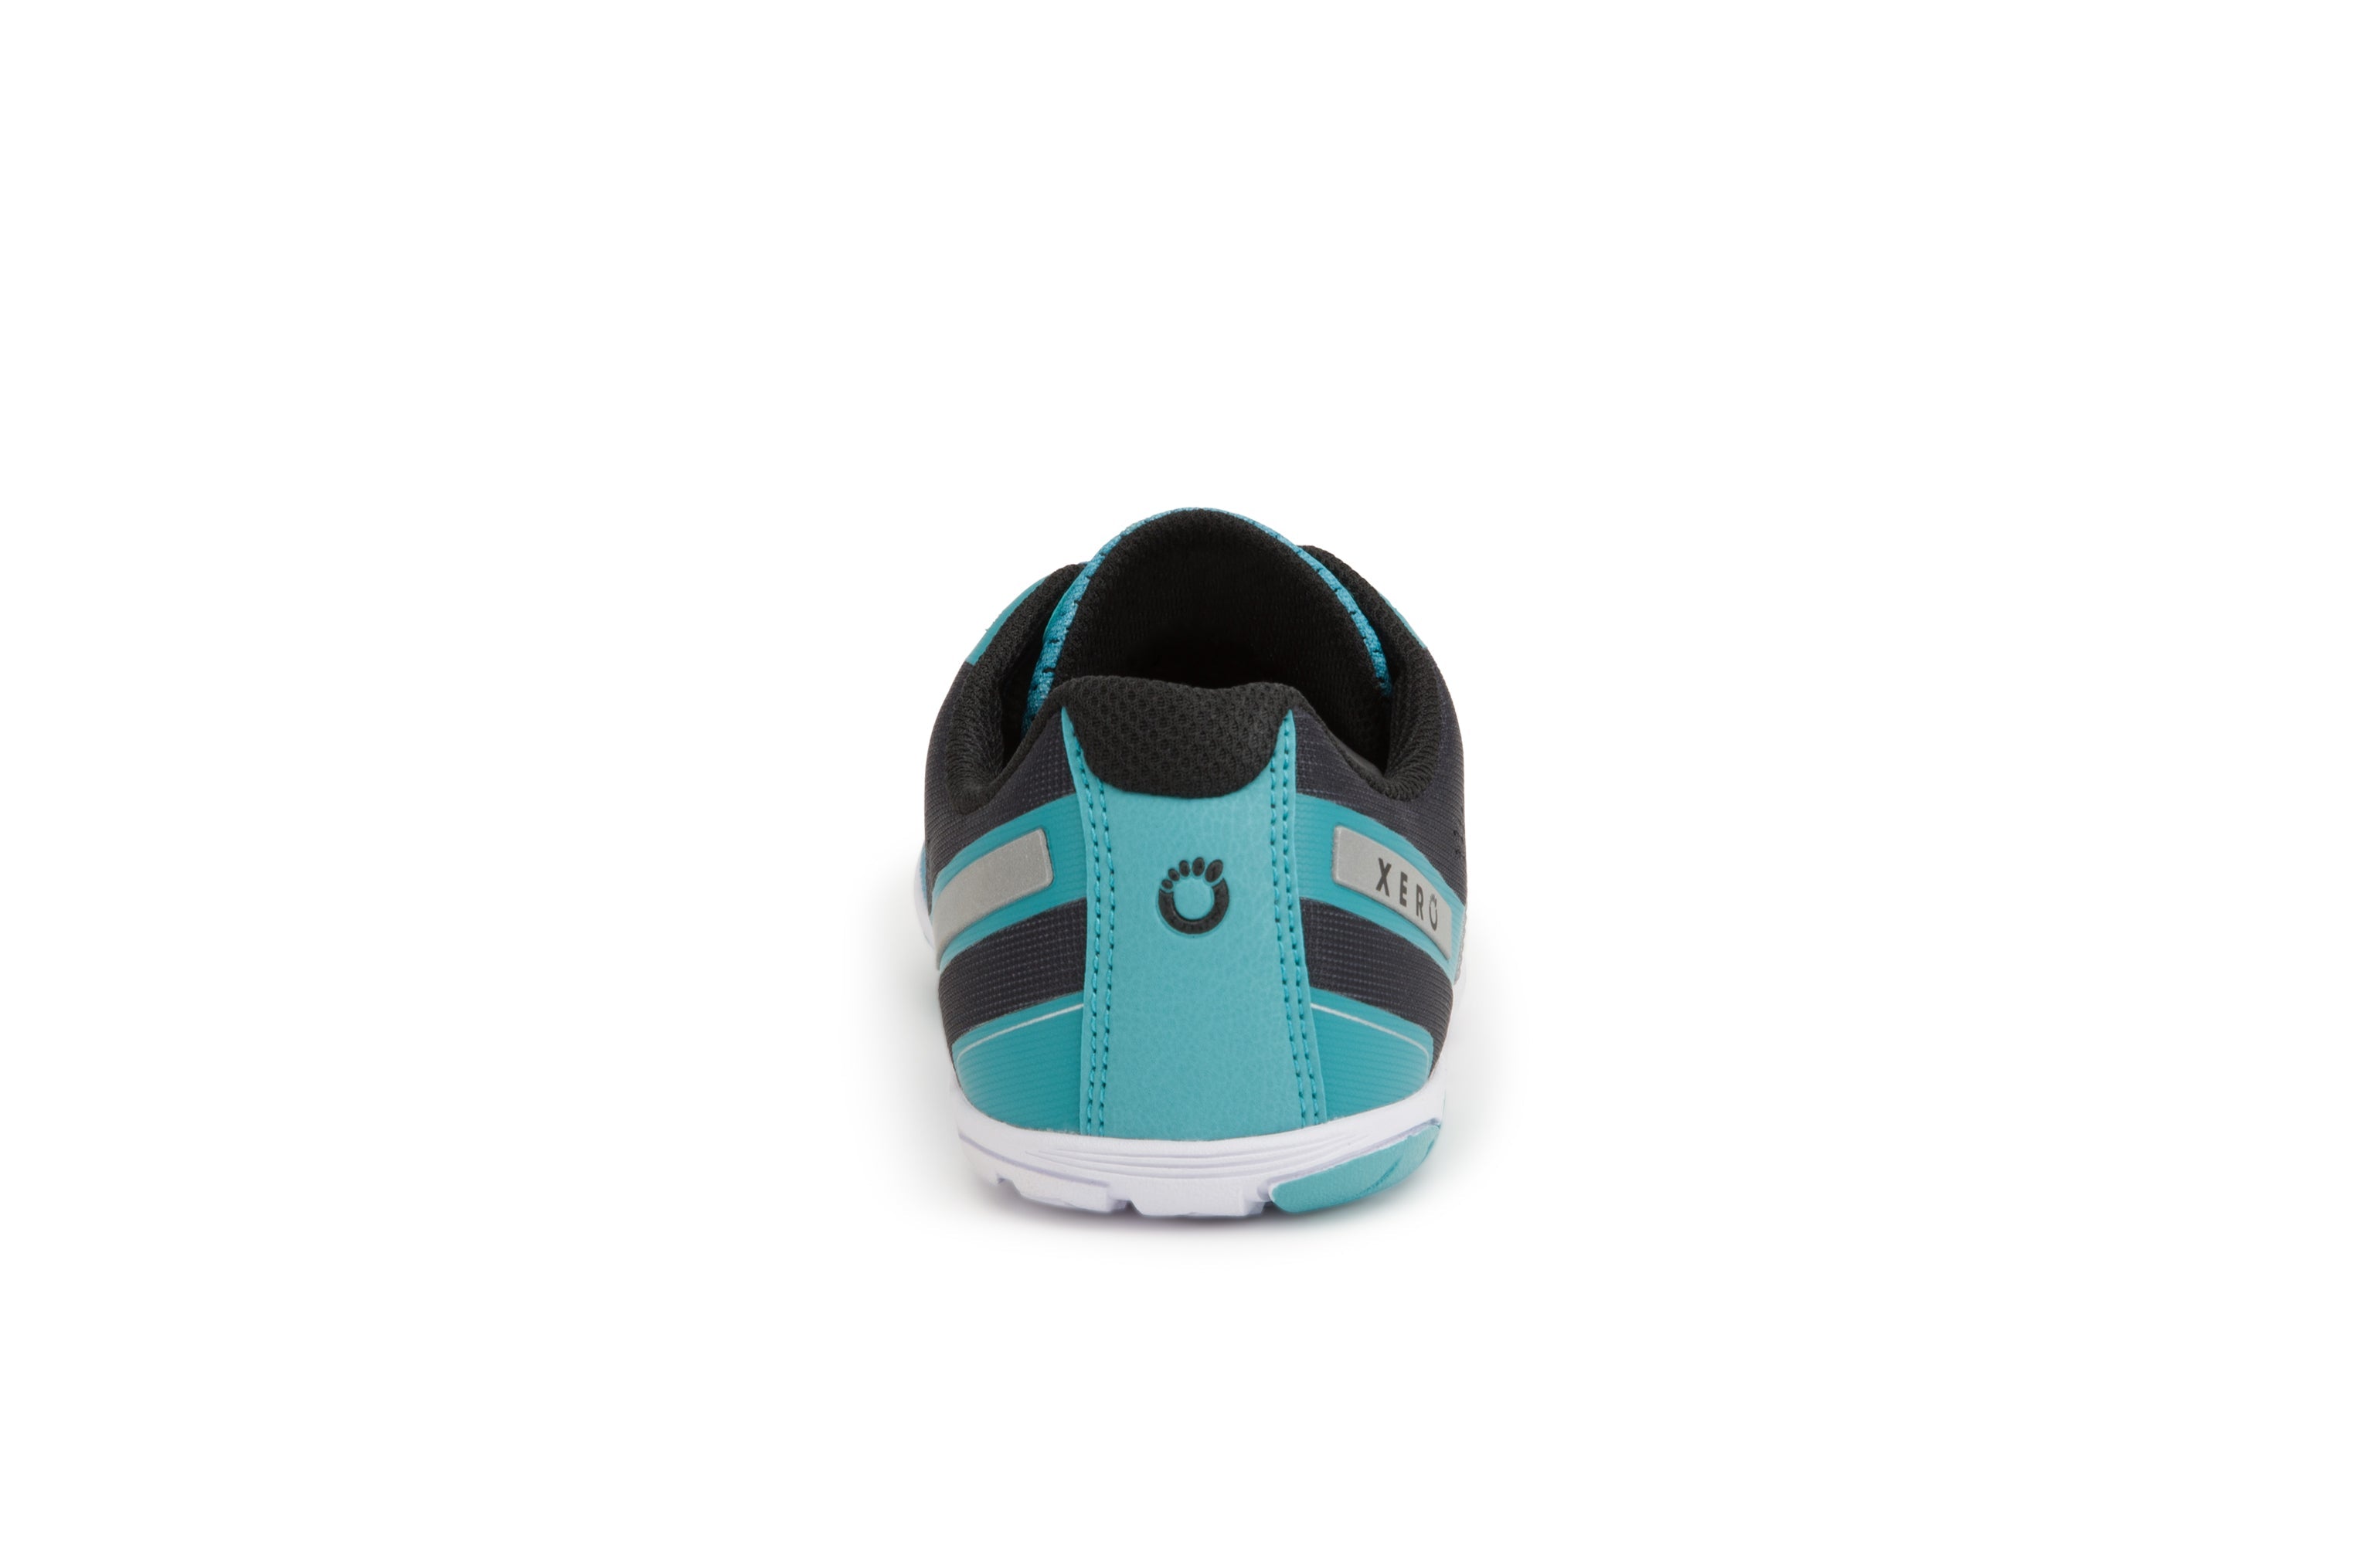 Xero Shoes HFS Womens barfods træningssko/løbesko til kvinder i farven porcelain blue, bagfra